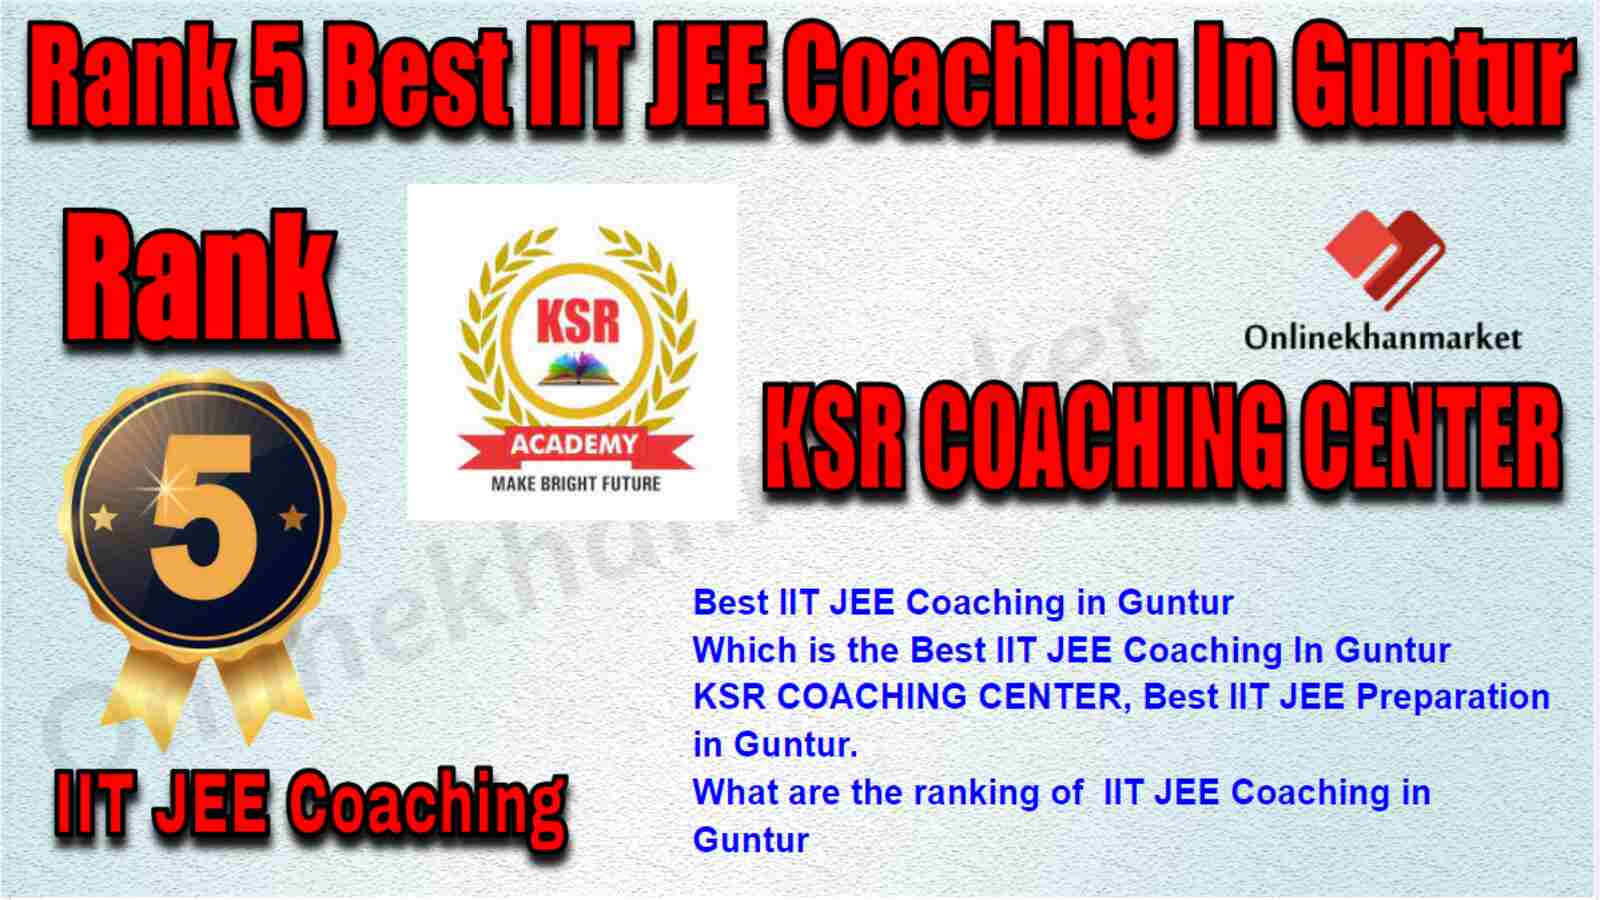 Rank 5 Best IIT JEE Coaching in Guntur